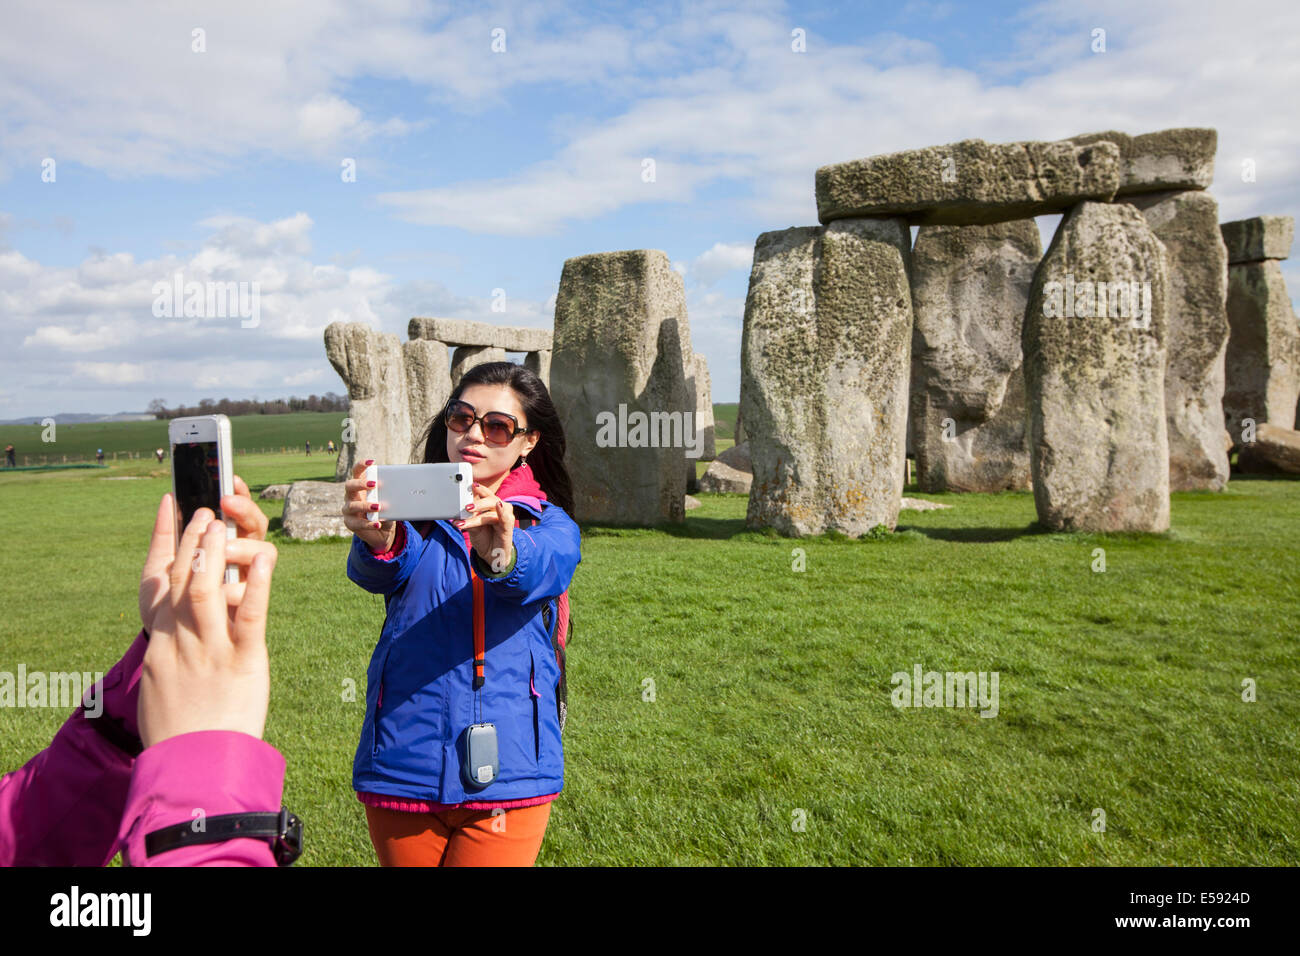 Los turistas fotografiar y las piedras al pie círculo de piedra de Stonehenge, Wiltshire, UK Foto de stock